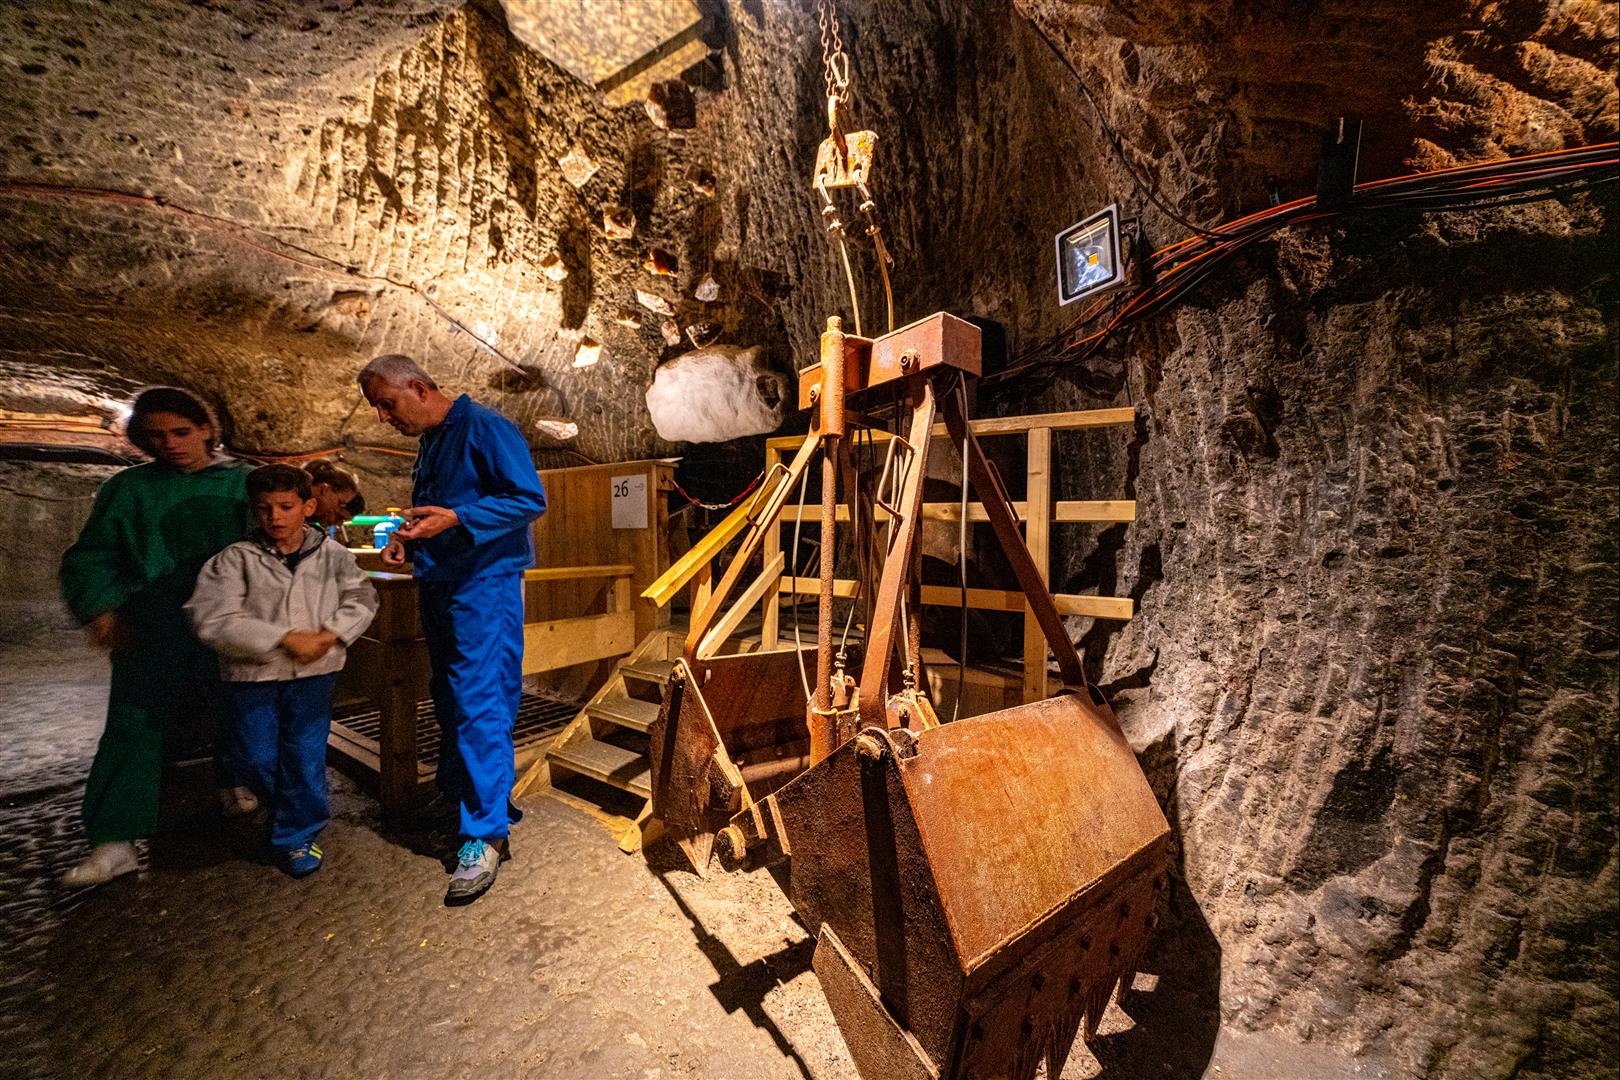 [2019 中歐攝影旅行] Day07 – 格拉茲 Graz、哈斯塔特 Hallstatt、哈斯塔特鹽礦 Salt Mine 體驗